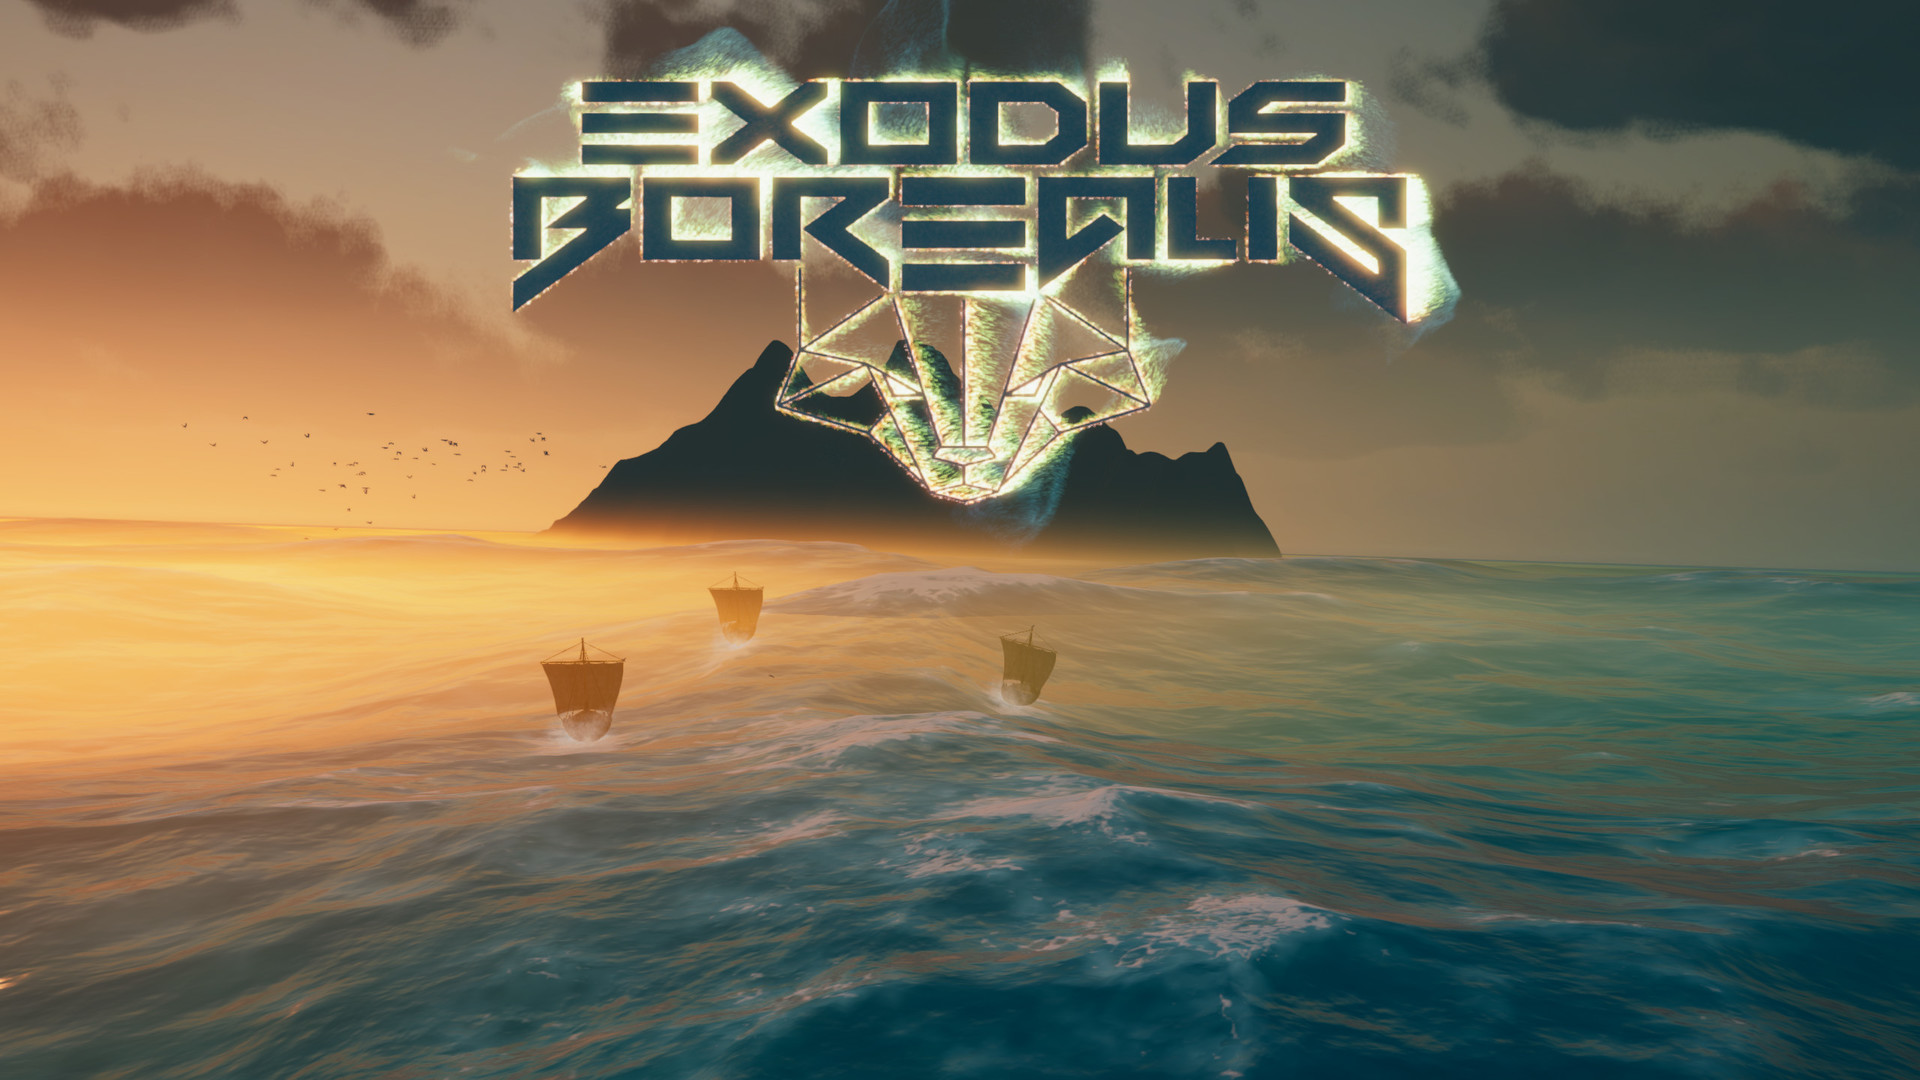 Exodus Borealis Free Download